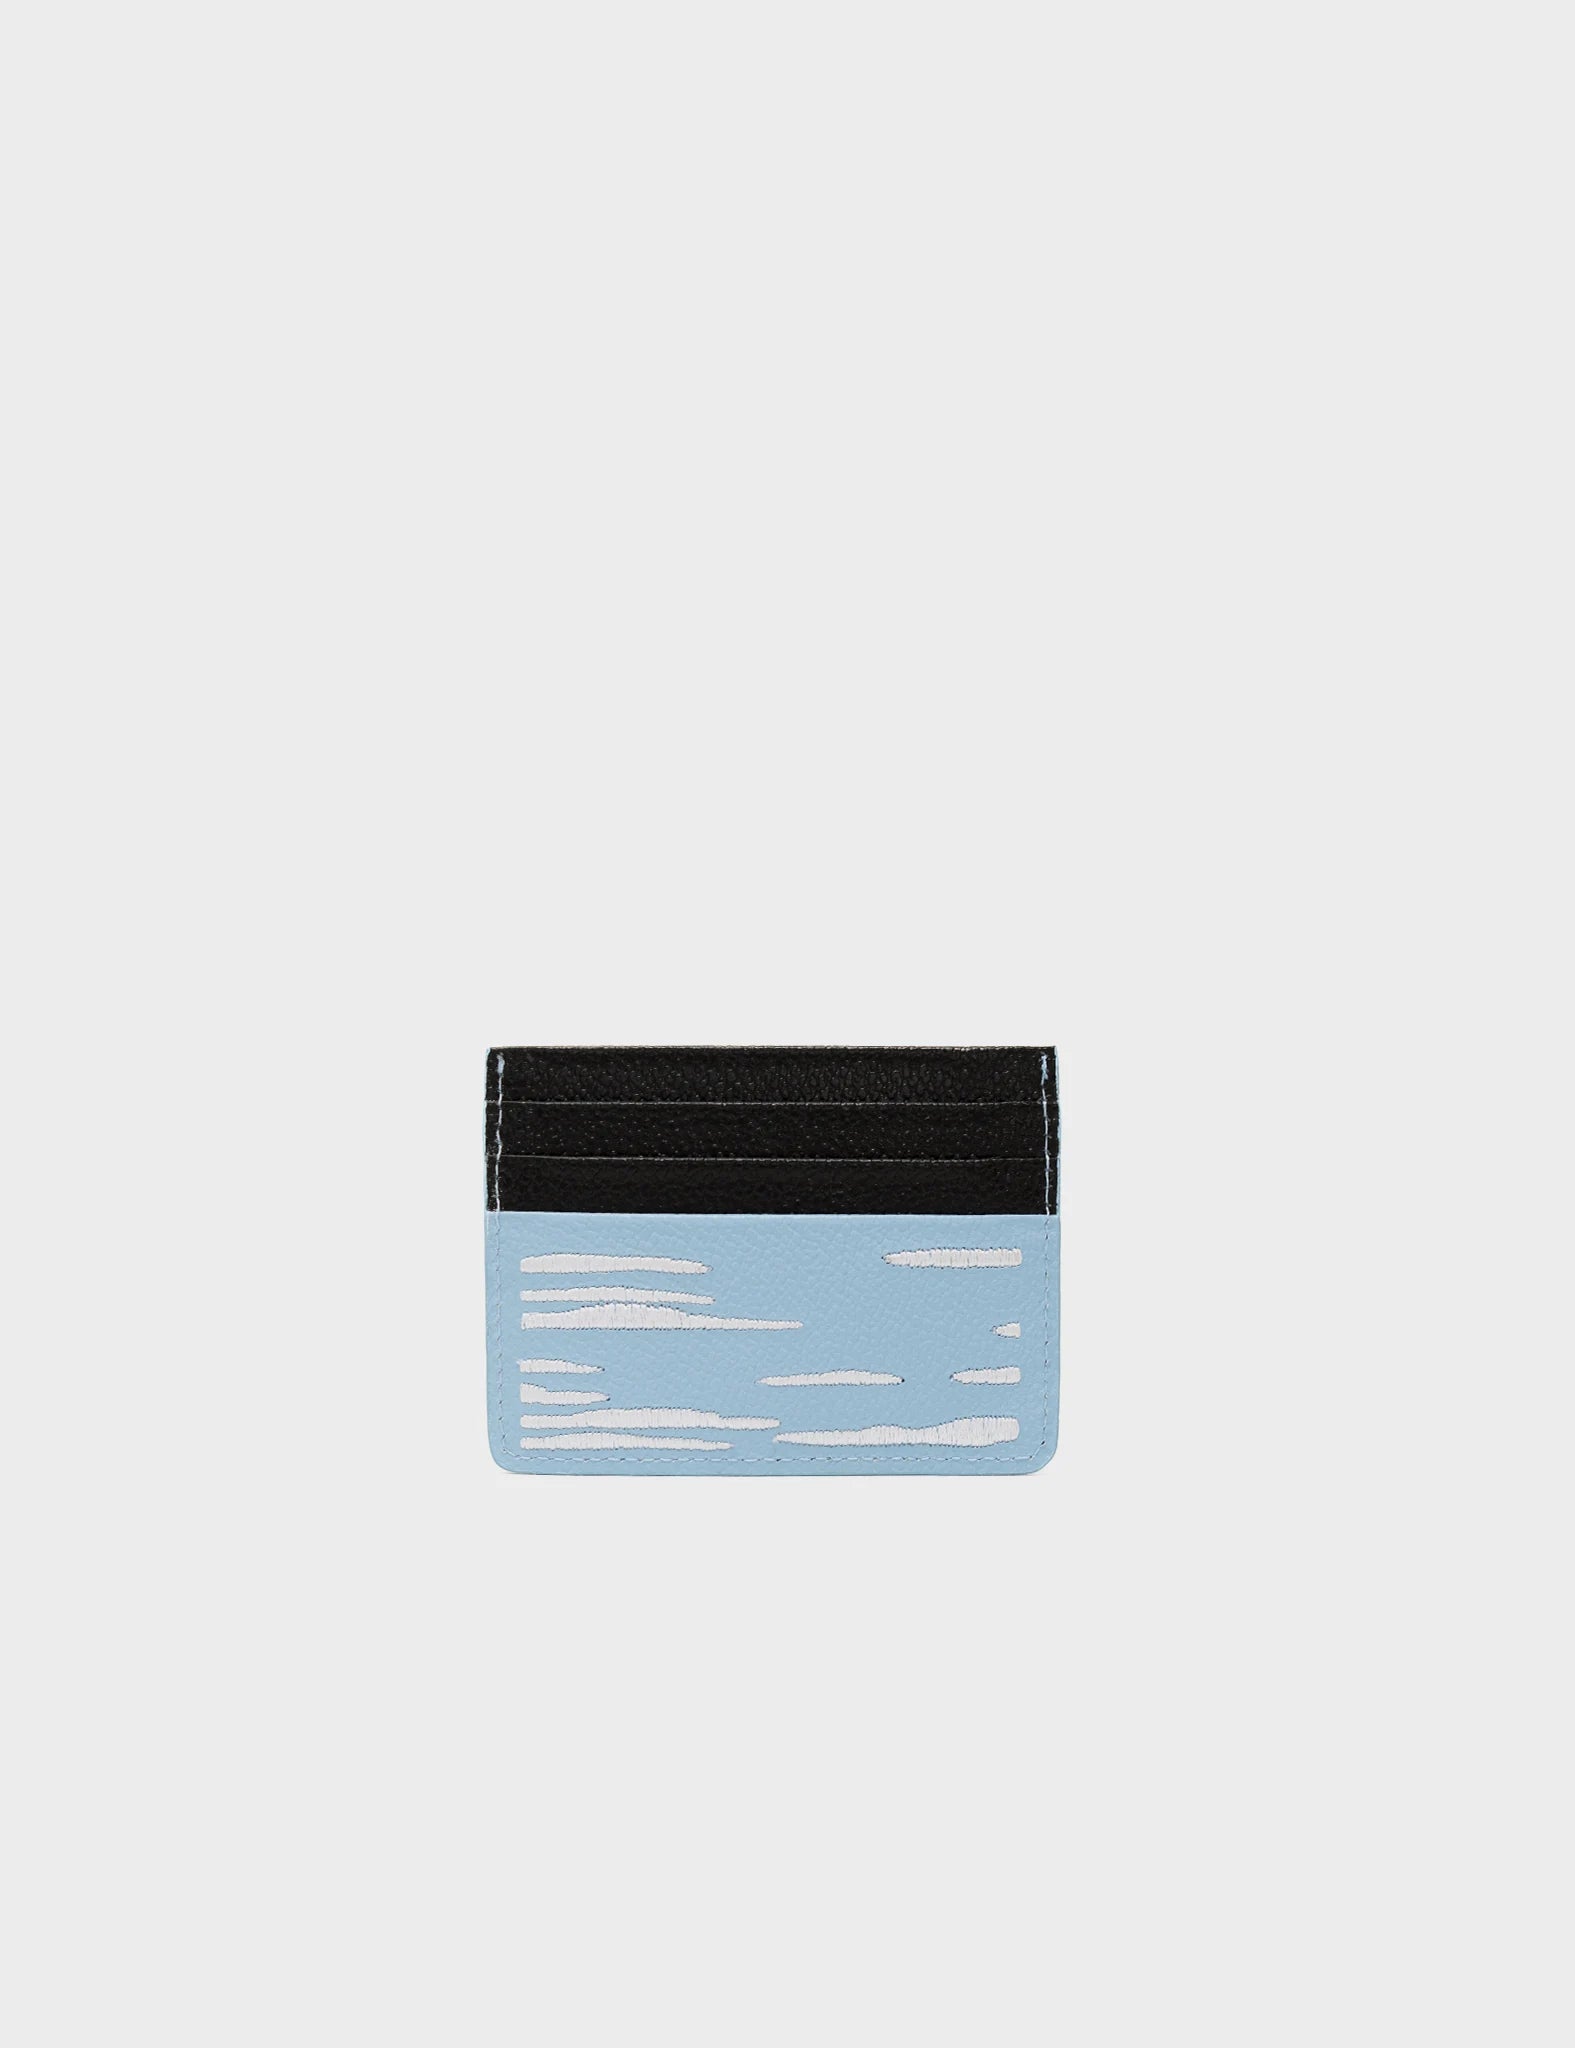 Wallet Splish Splash Blue And Black Leather Cardholder - Clouds Embroidery - Back 